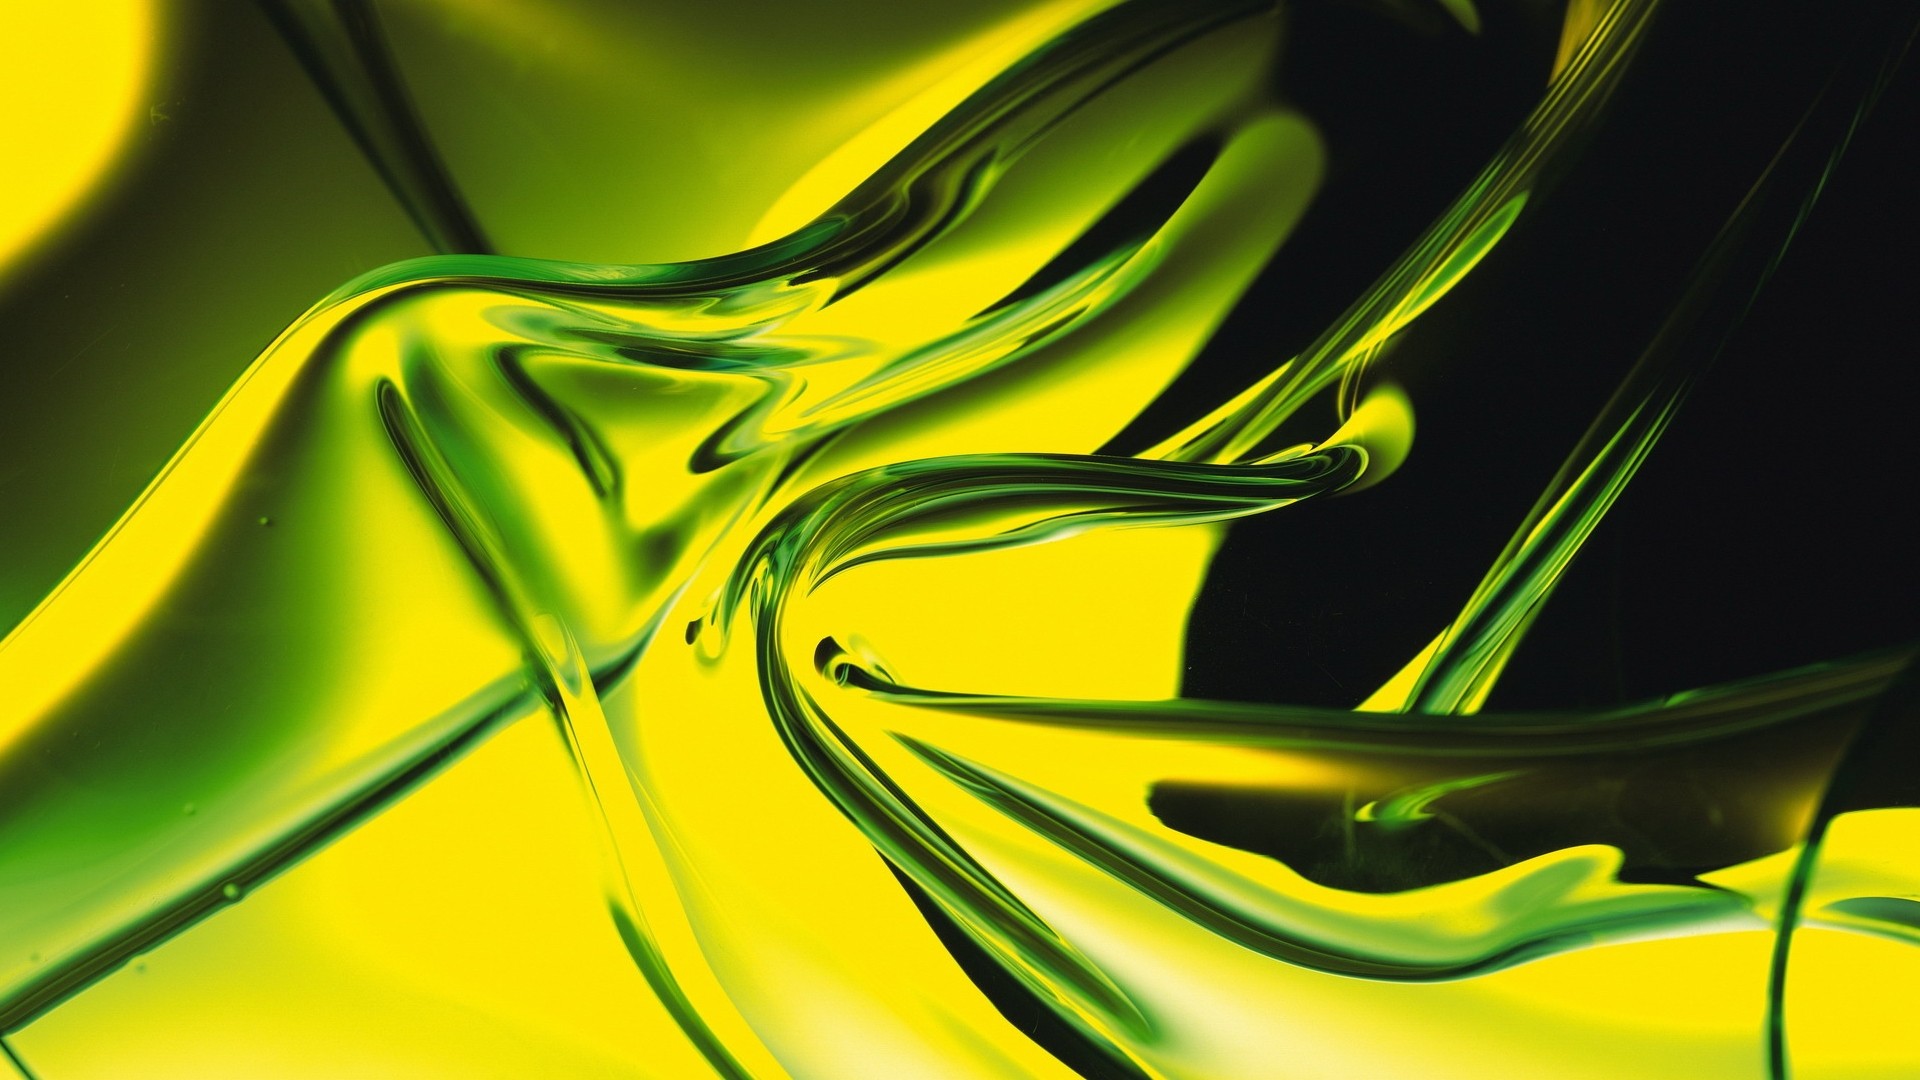 Скачать обои бесплатно Зеленый, Жёлтый, Абстрактные картинка на рабочий стол ПК